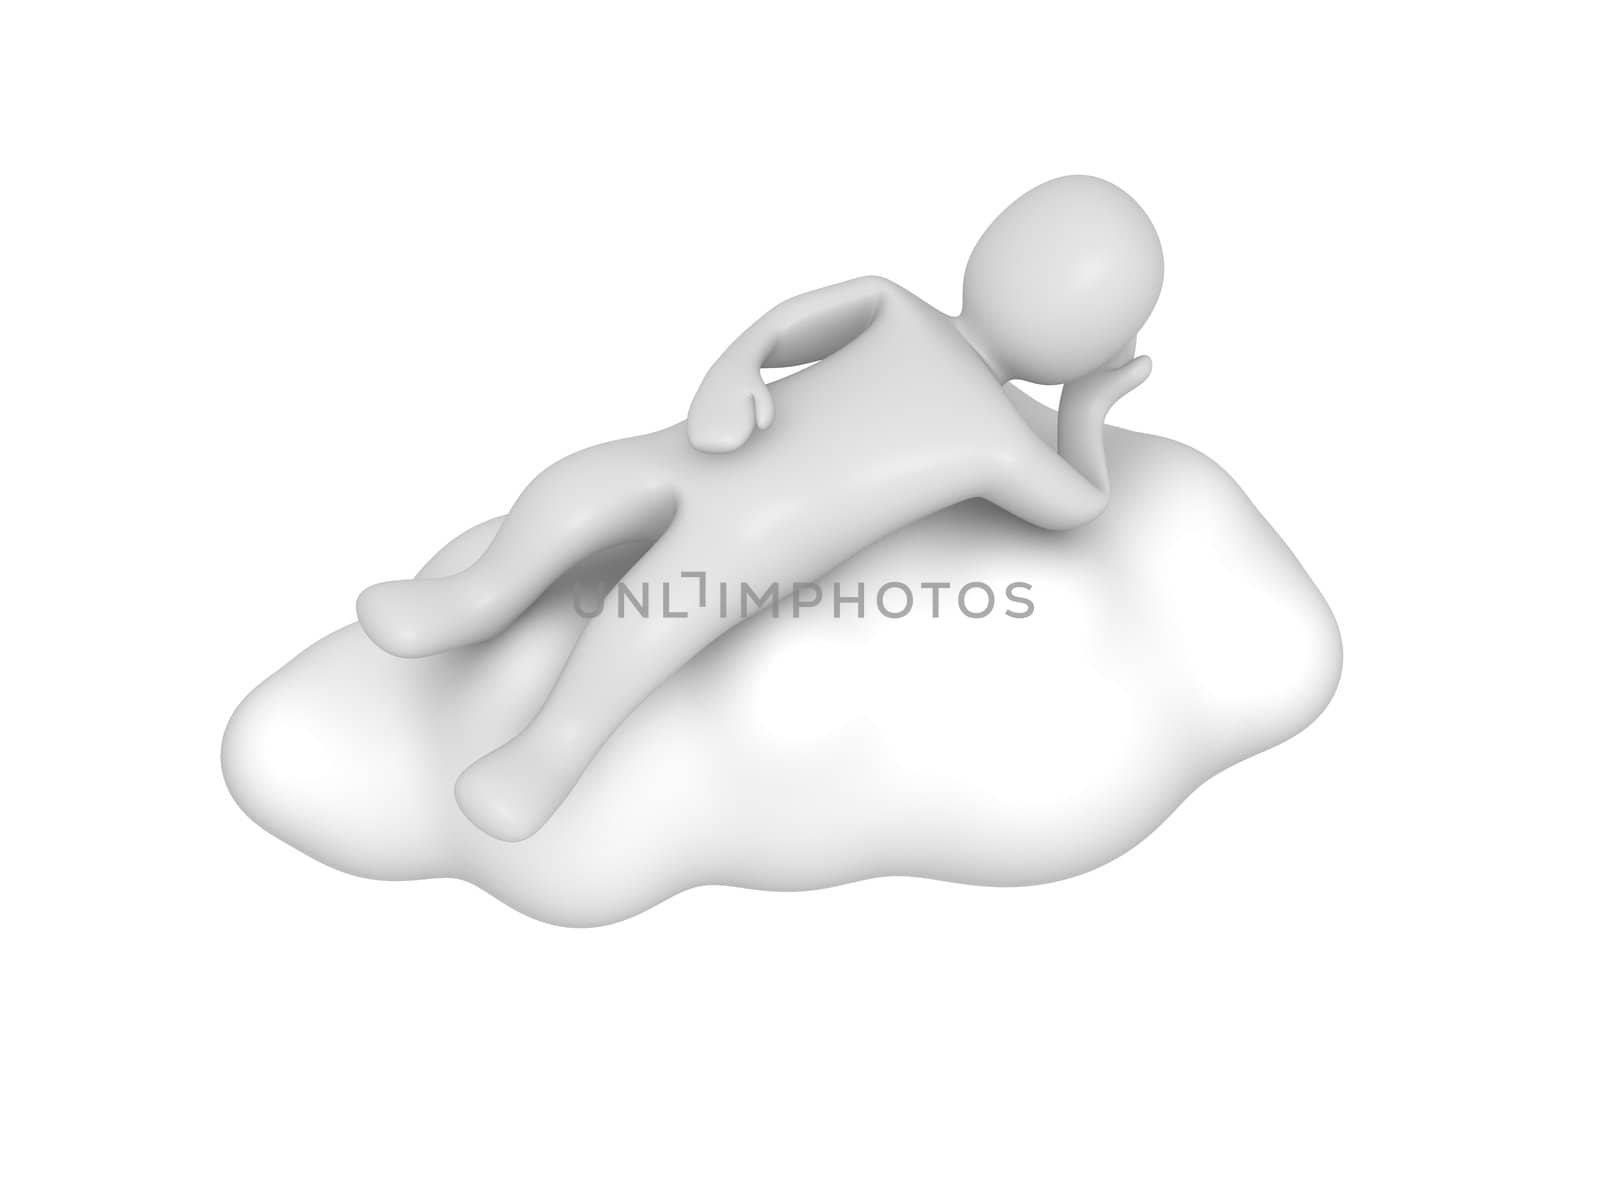 Man lying on cloud by skvoor